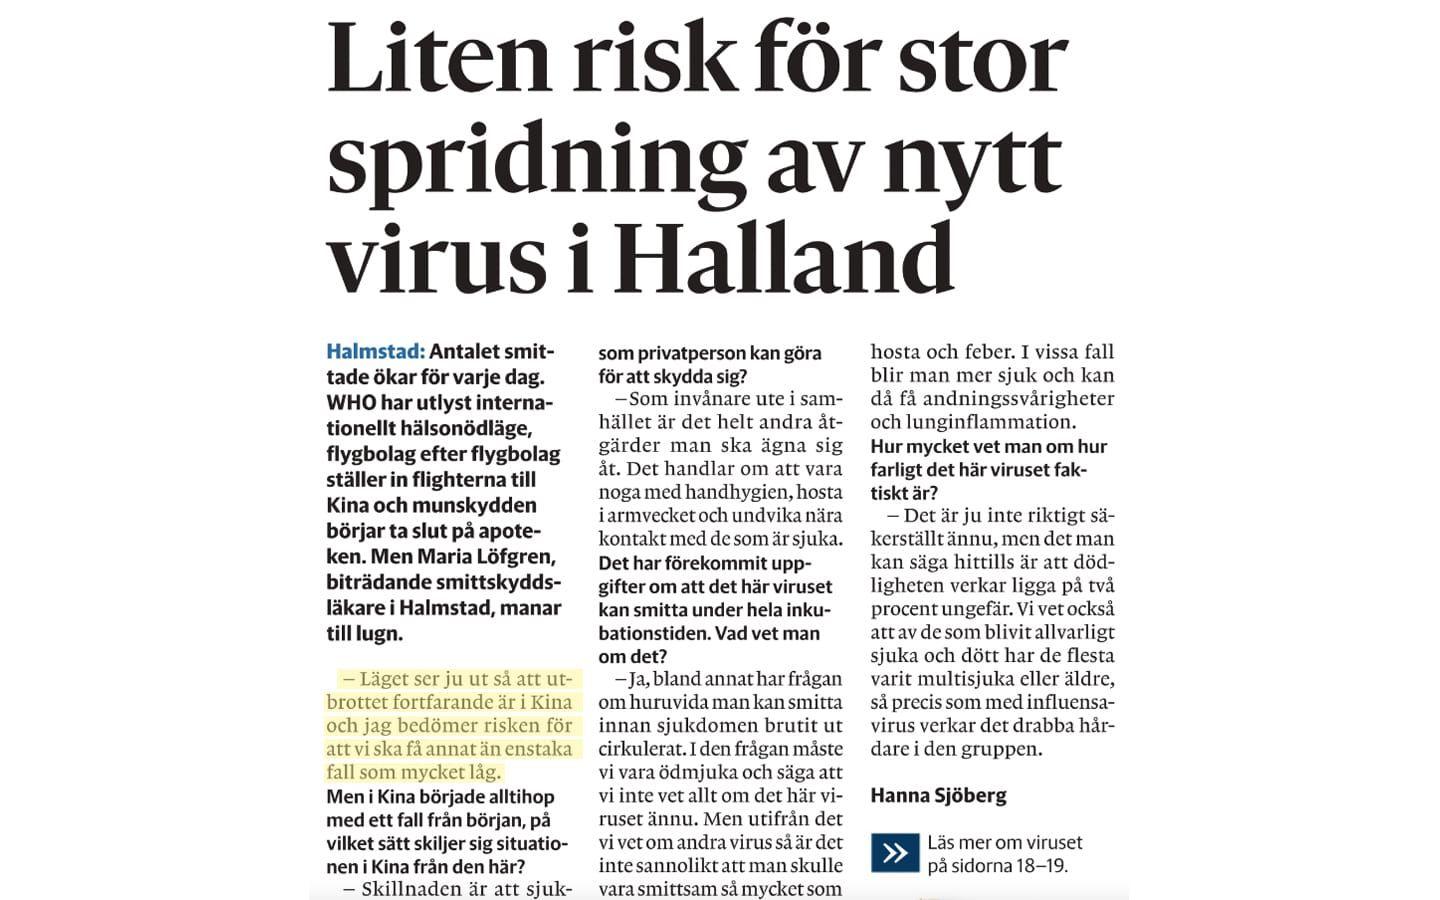 I en artikel i HP den 1 februari 2020 bedömde biträdande smittskyddsläkare Maria Löfgren att det inte var troligt med någon spridning av covid-19 i Halland. Många expertutlåtanden från innan pandemin visade sig inte stämma.